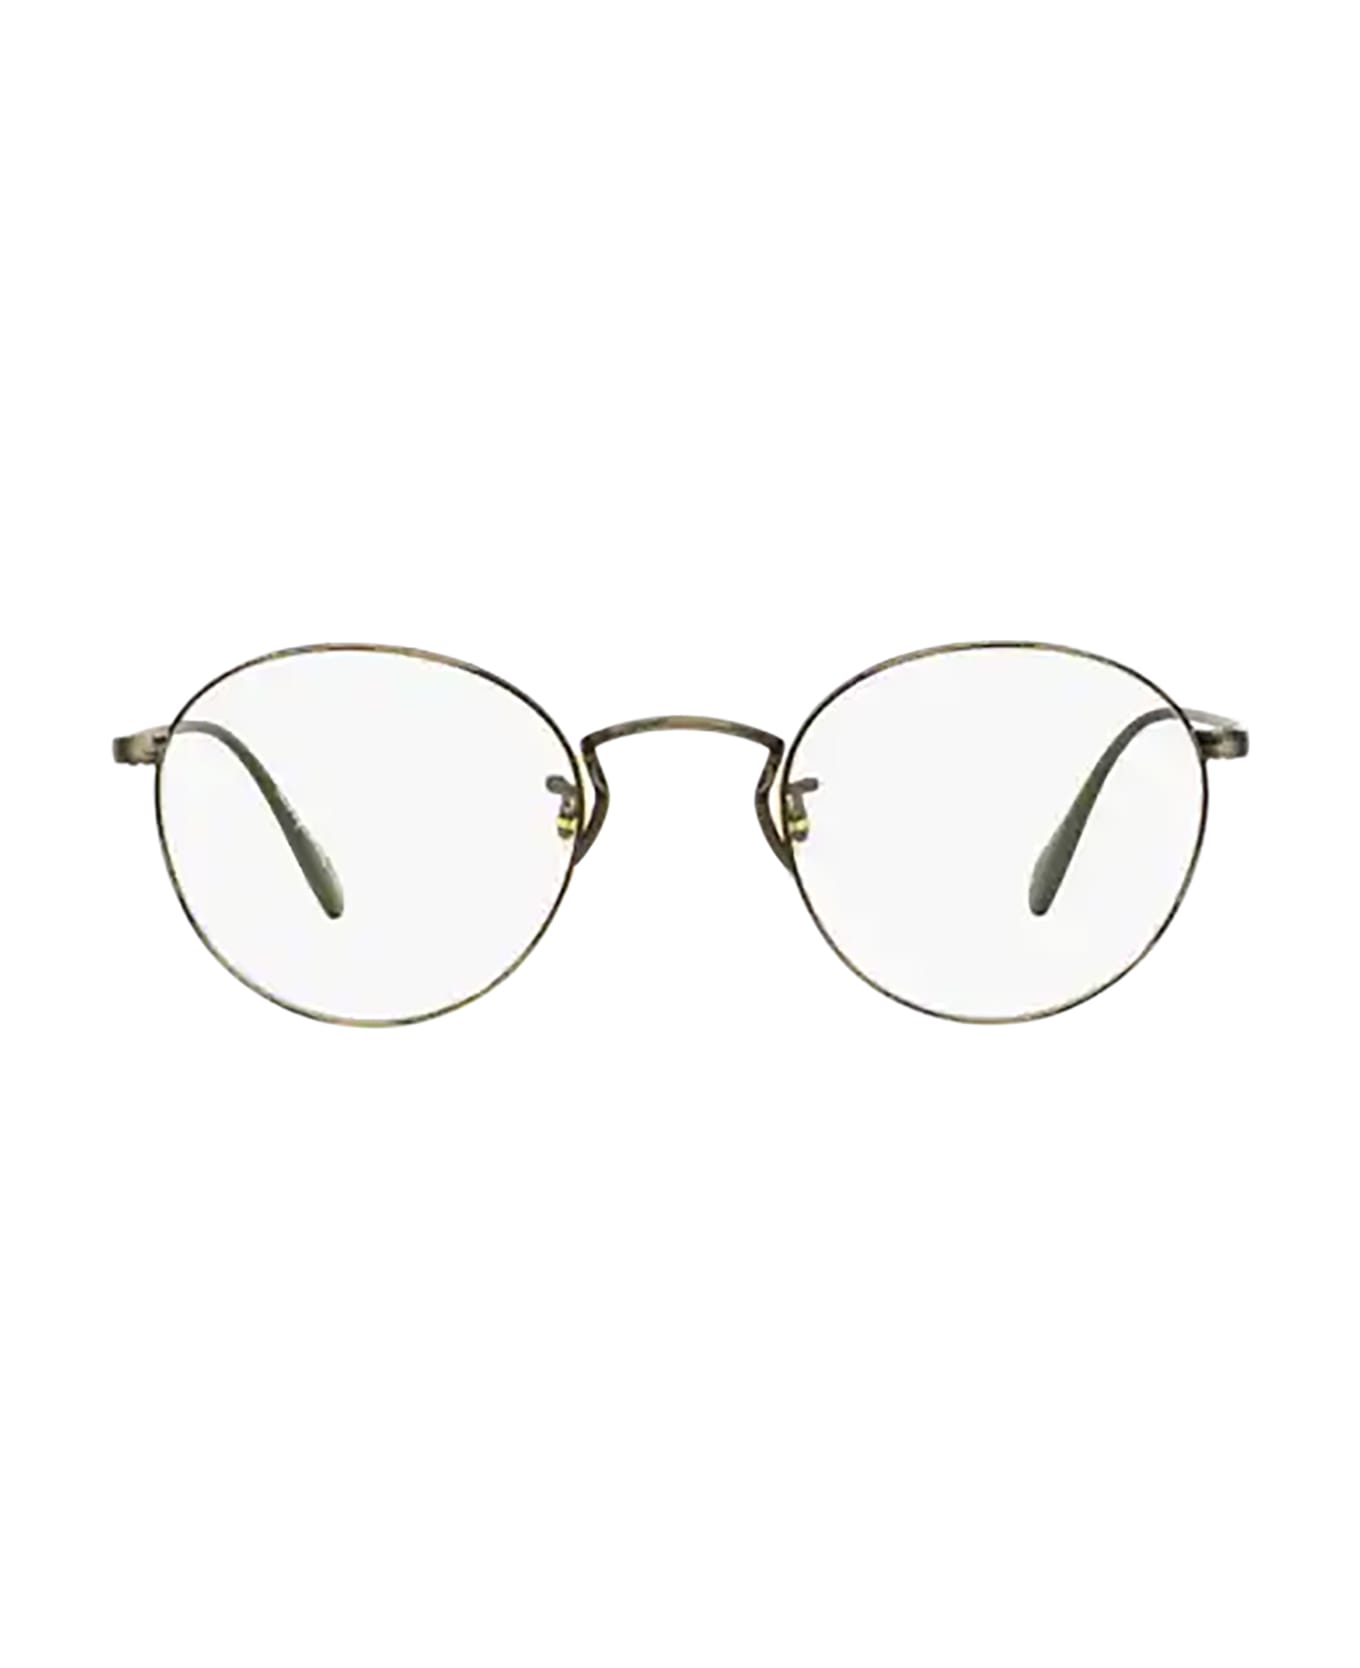 Oliver Peoples Ov1186 Antique Pewter Glasses - Antique Pewter